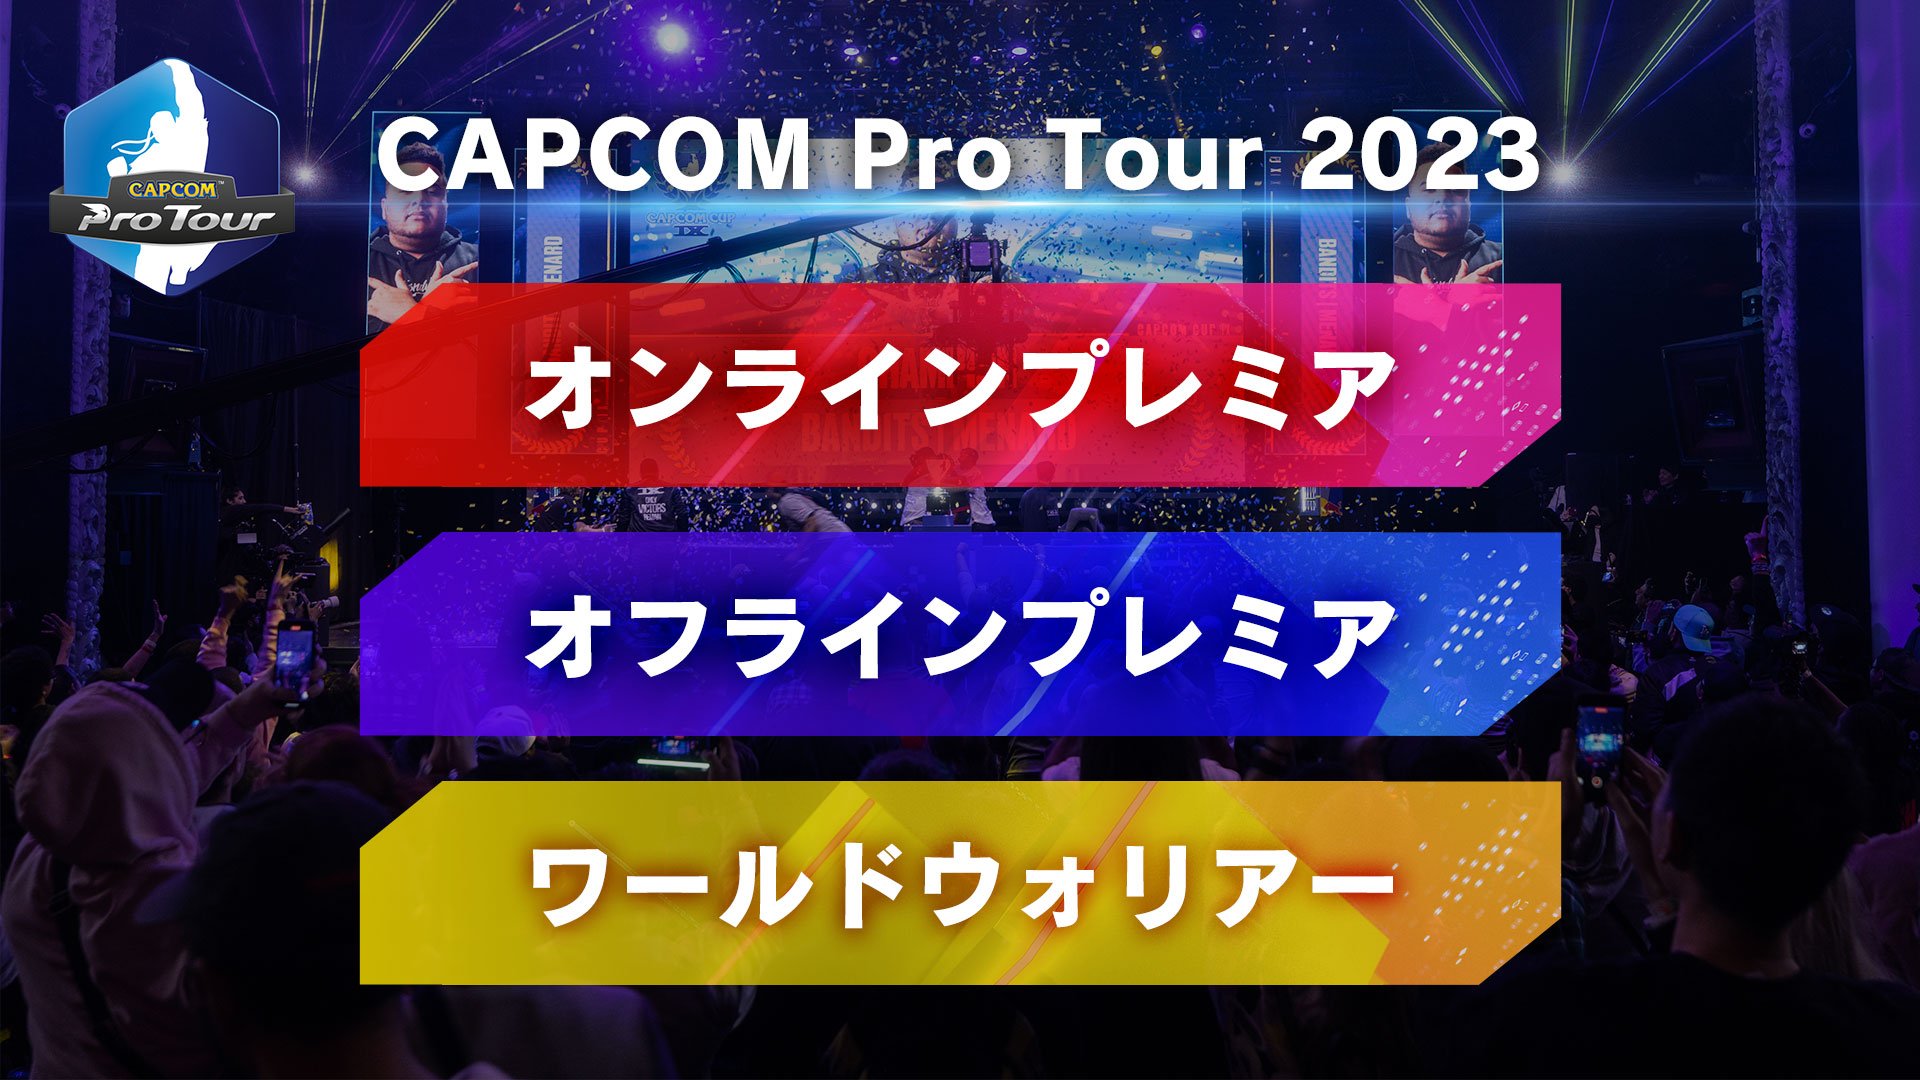 "CAPCOM Pro Tour 2023"